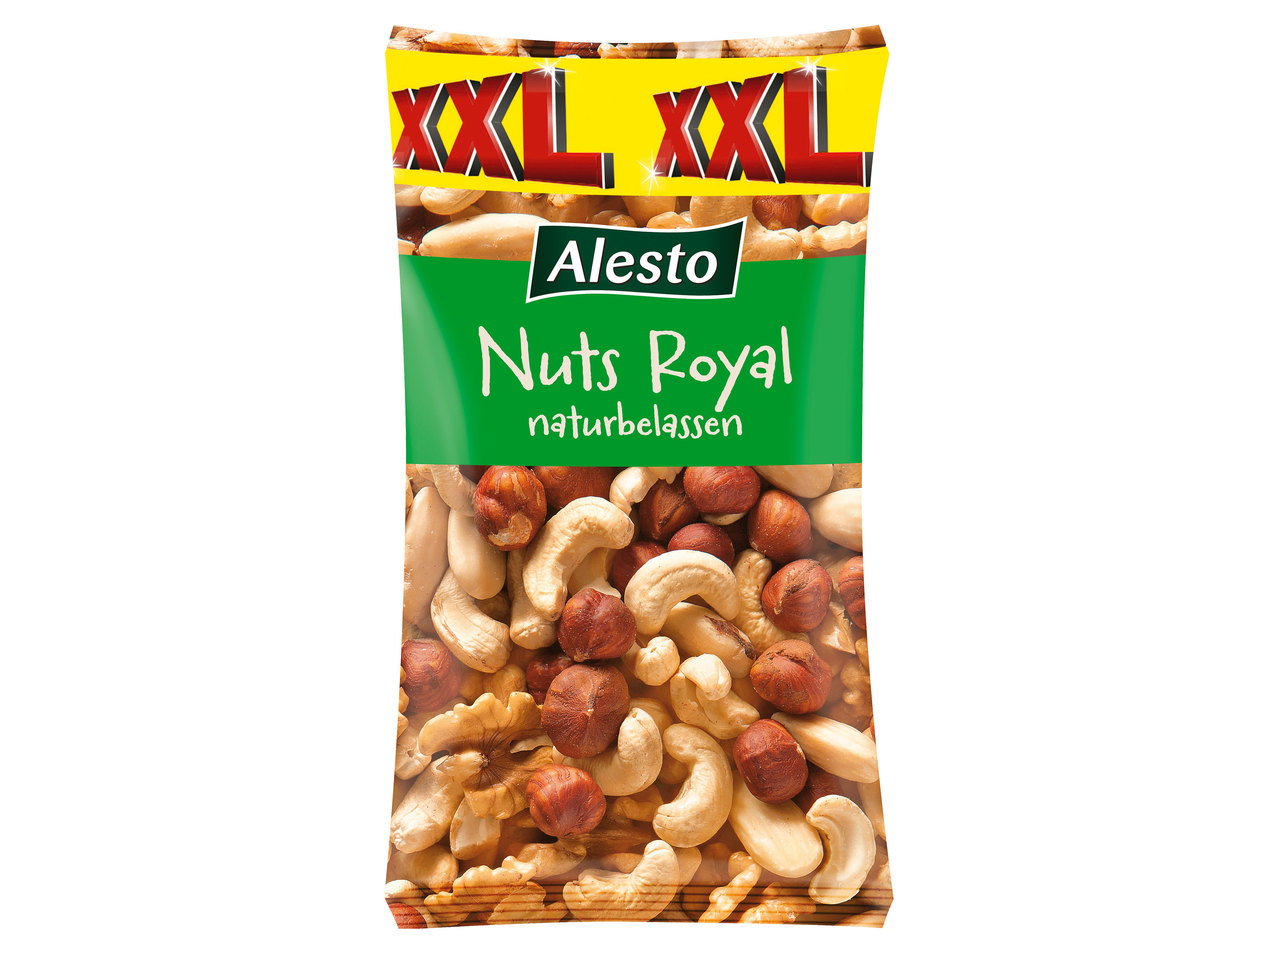 ALESTO Nuts Royal